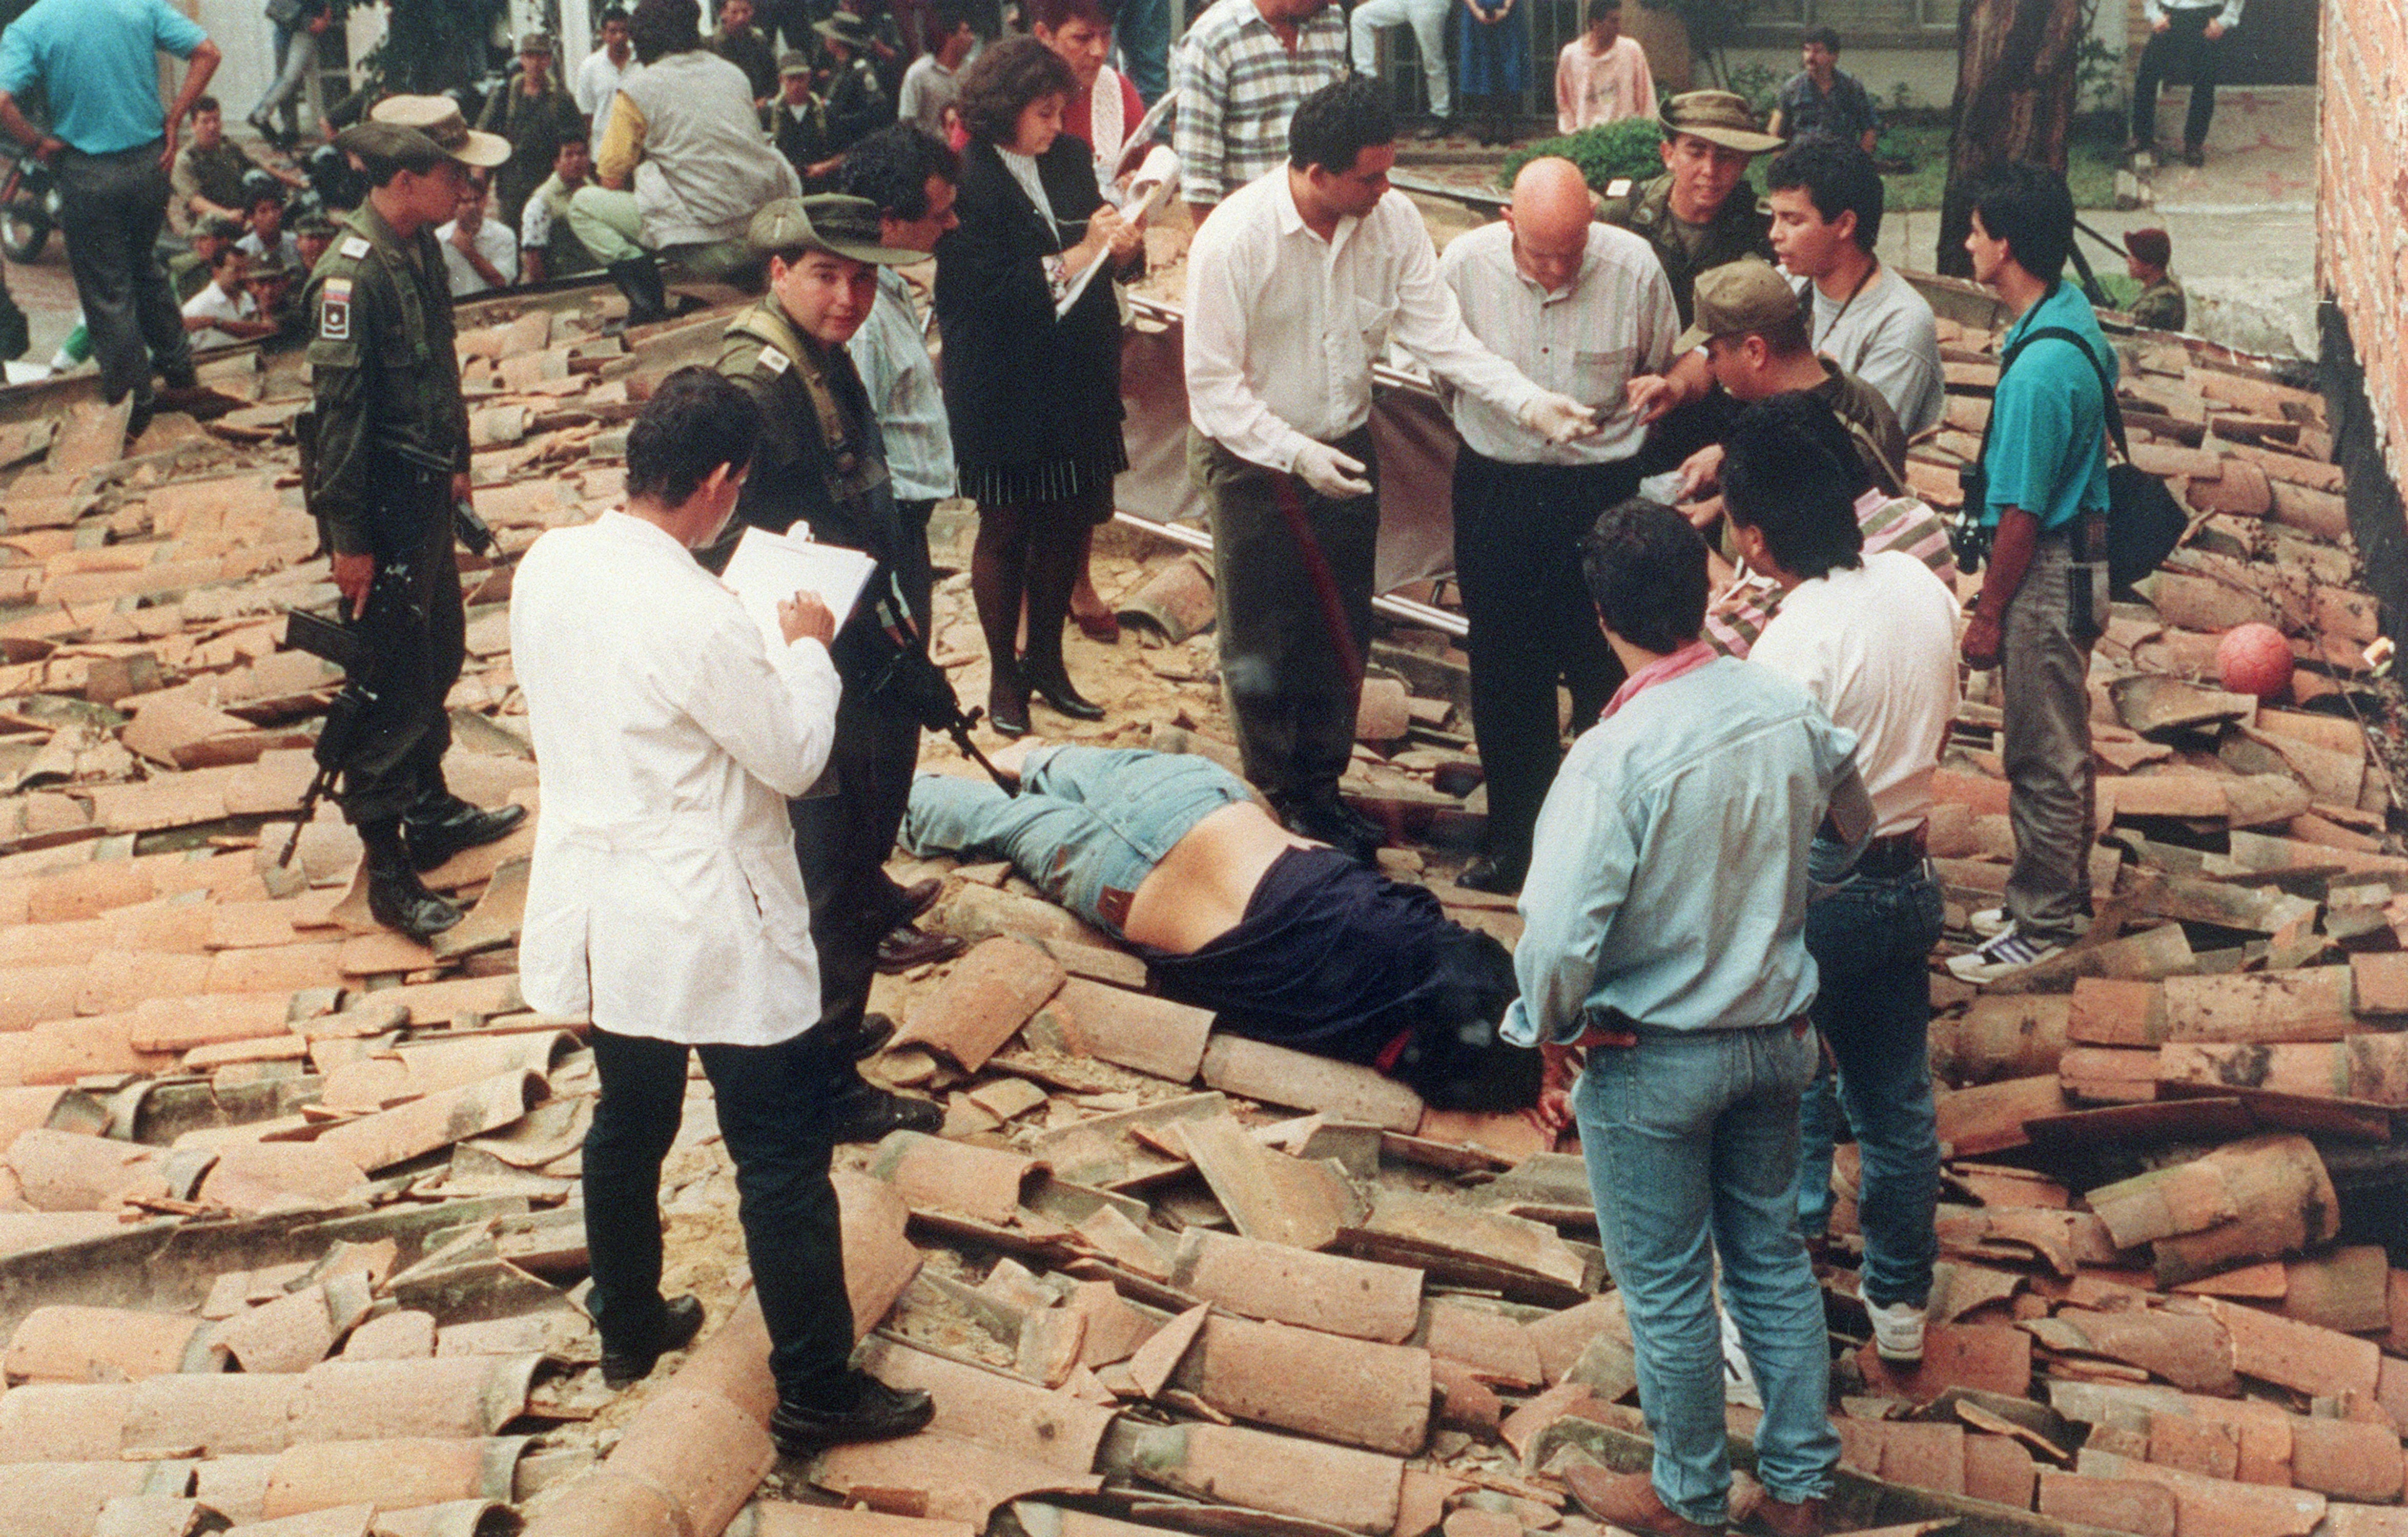 El cuerpo sin vida de Pablo Emilio Escobar Gaviria sobre el tejado donde fue ultimado el 2 de diciembre de 1993